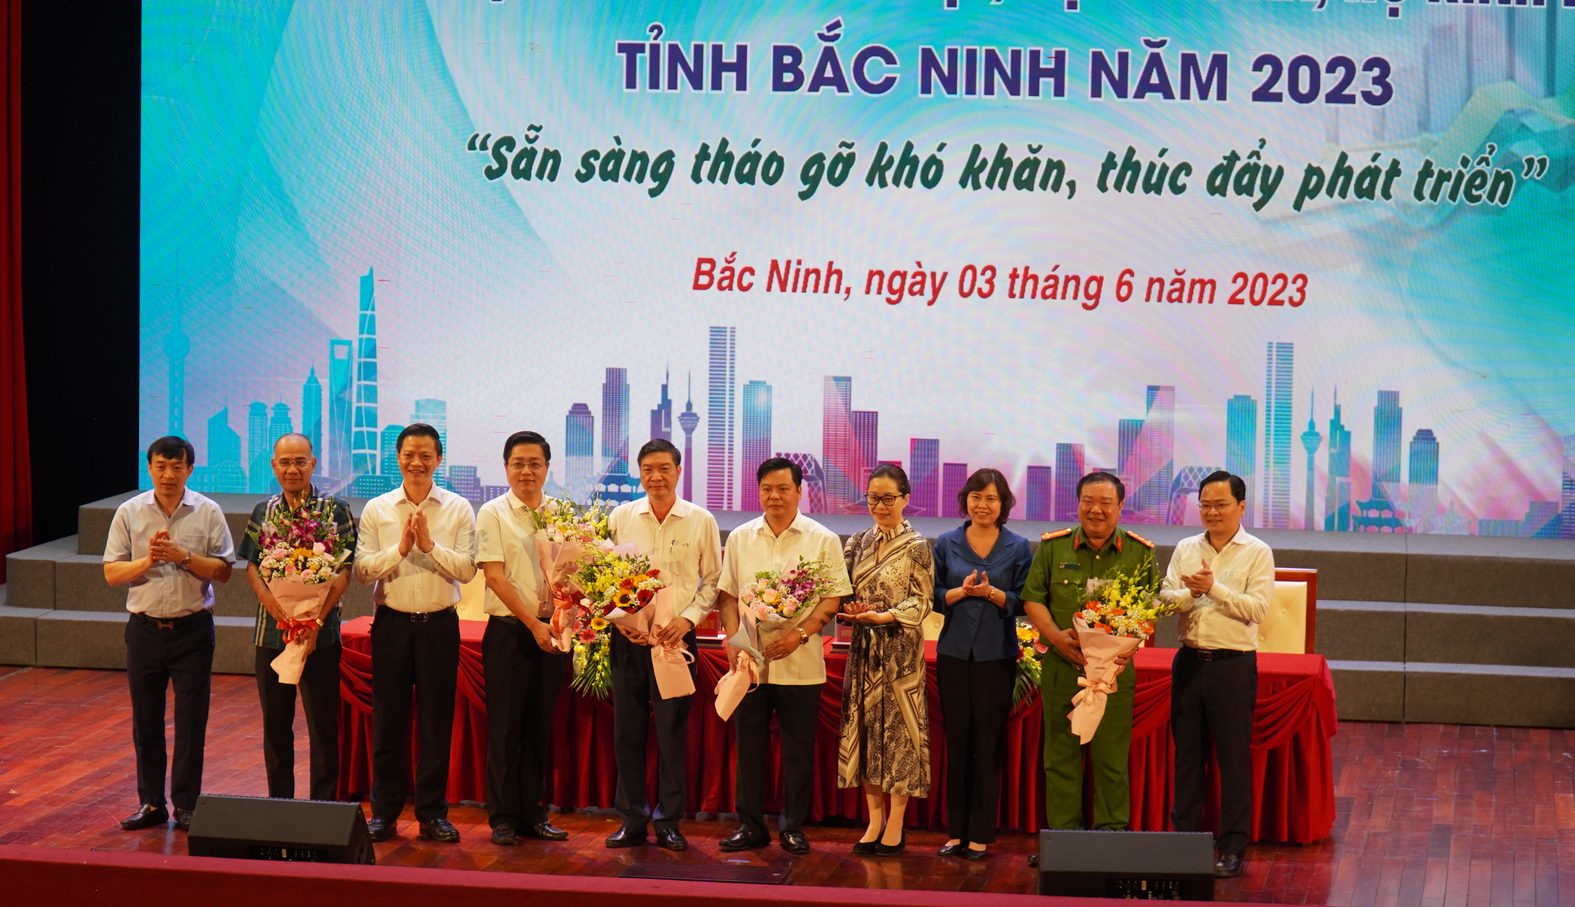 Tỉnh Bắc Ninh ra mắt 5 Tổ công tác tháo gỡ khó khăn cho doanh nghiệp sáng 3/6. Ảnh: KL.